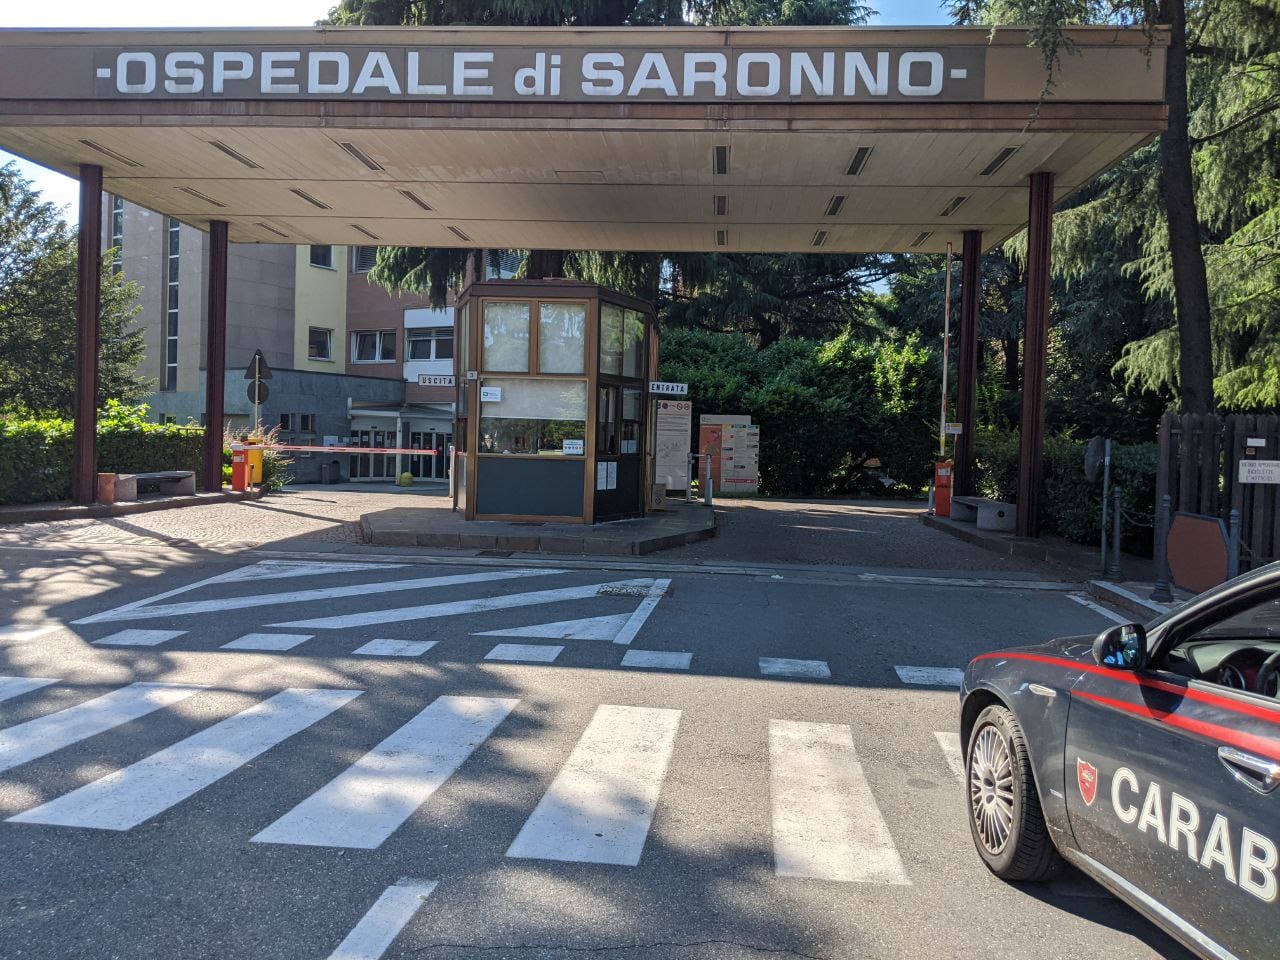 Le notizie di martedì: a Saronno l’unico nuovo caso covid del Varesotto. Il Comune cerca vigili: pochi candidati. Eccesso velocità, auto confiscata